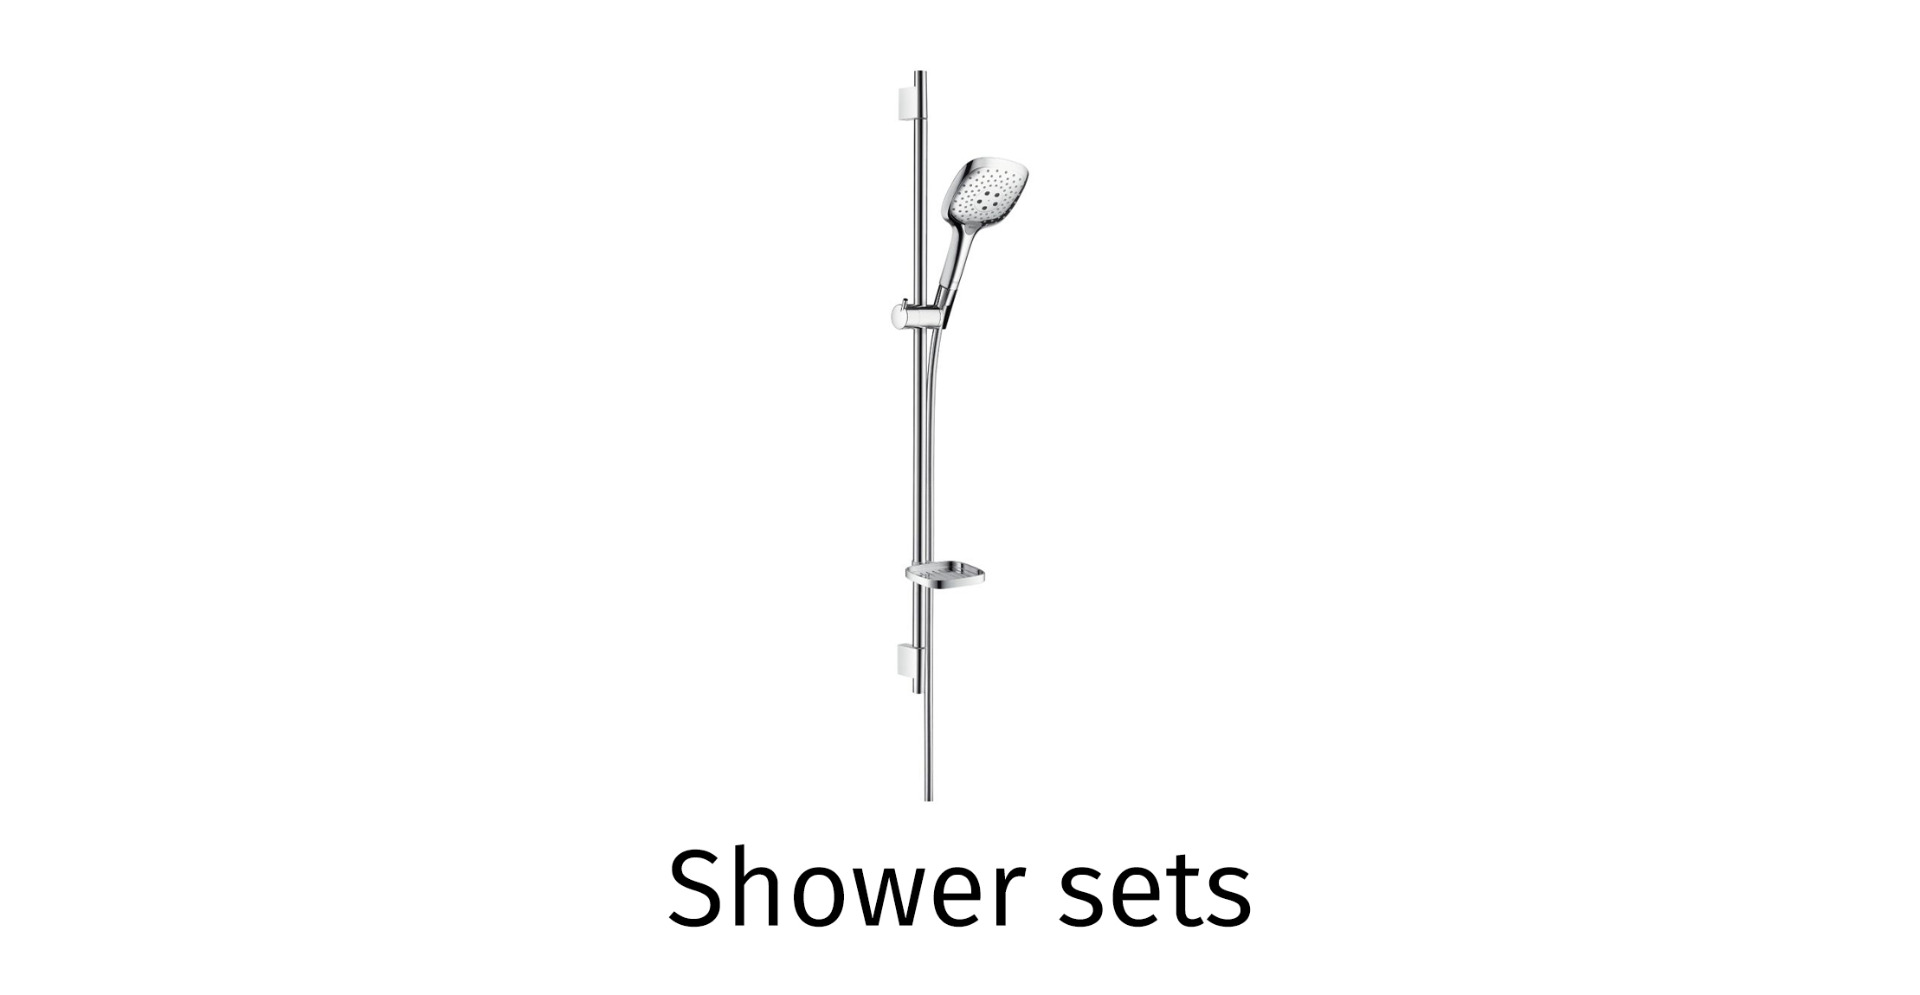 Shower sets